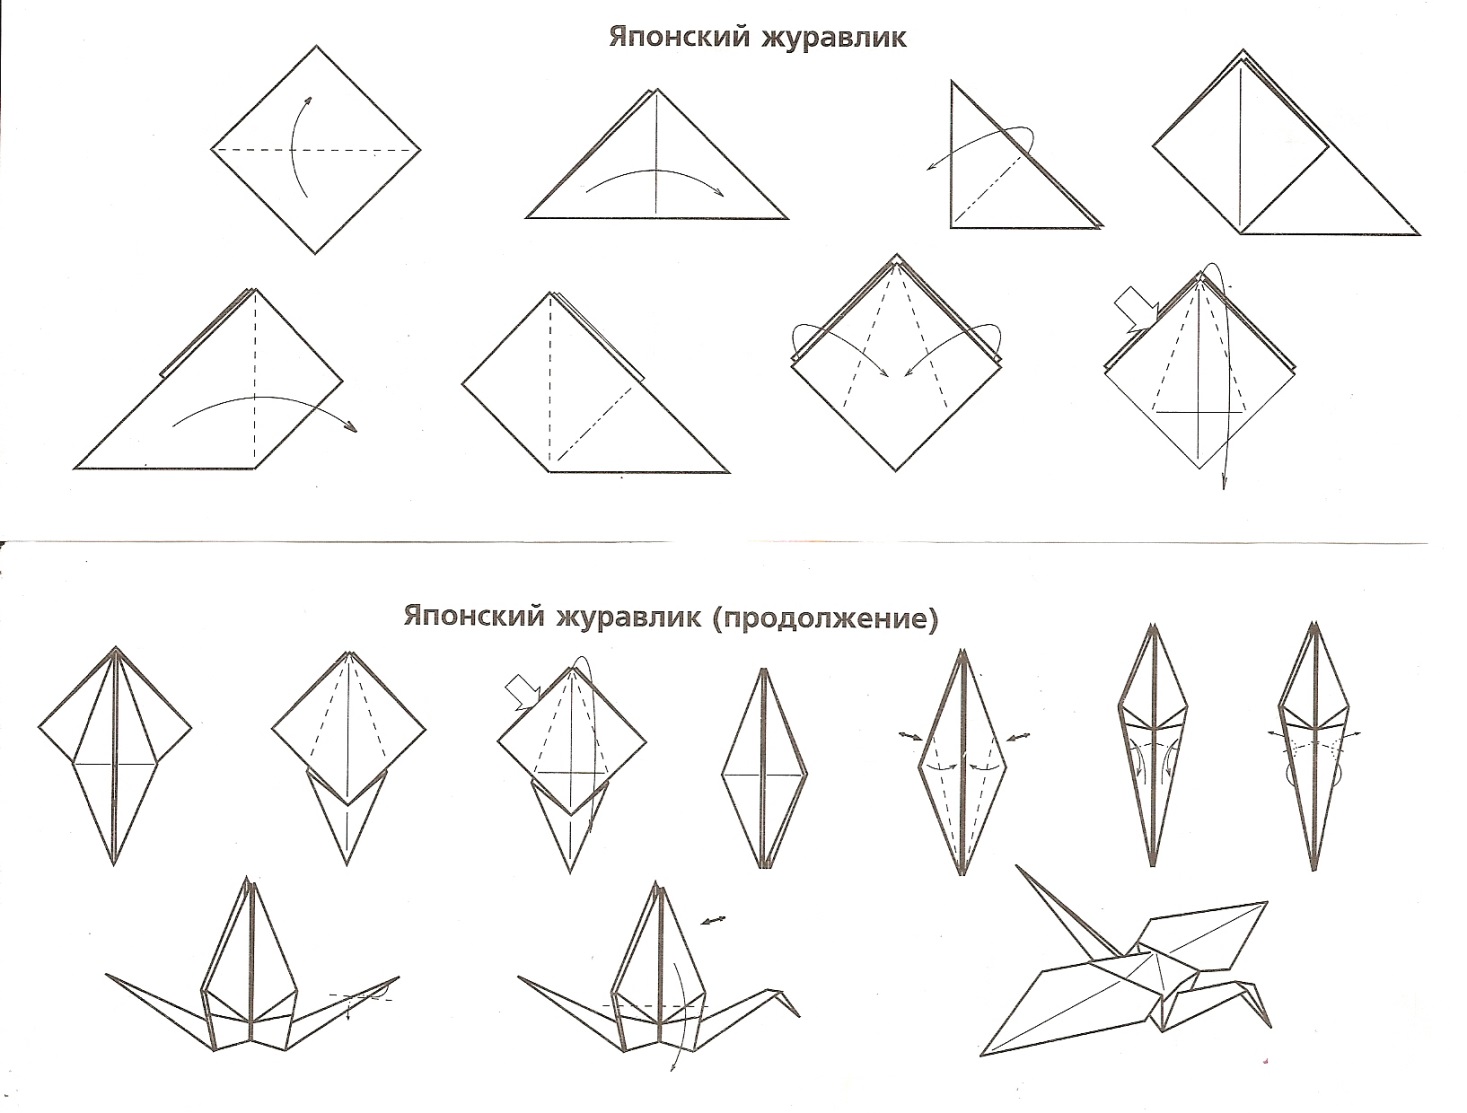 Бумажный журавлик оригами пошаговая. Оригами из бумаги для начинающих Журавлик. Оригами из бумаги Журавлик схема для начинающих. Оригами Журавлик из бумаги пошаговой инструкции. Оригами Журавлик схема для детей.